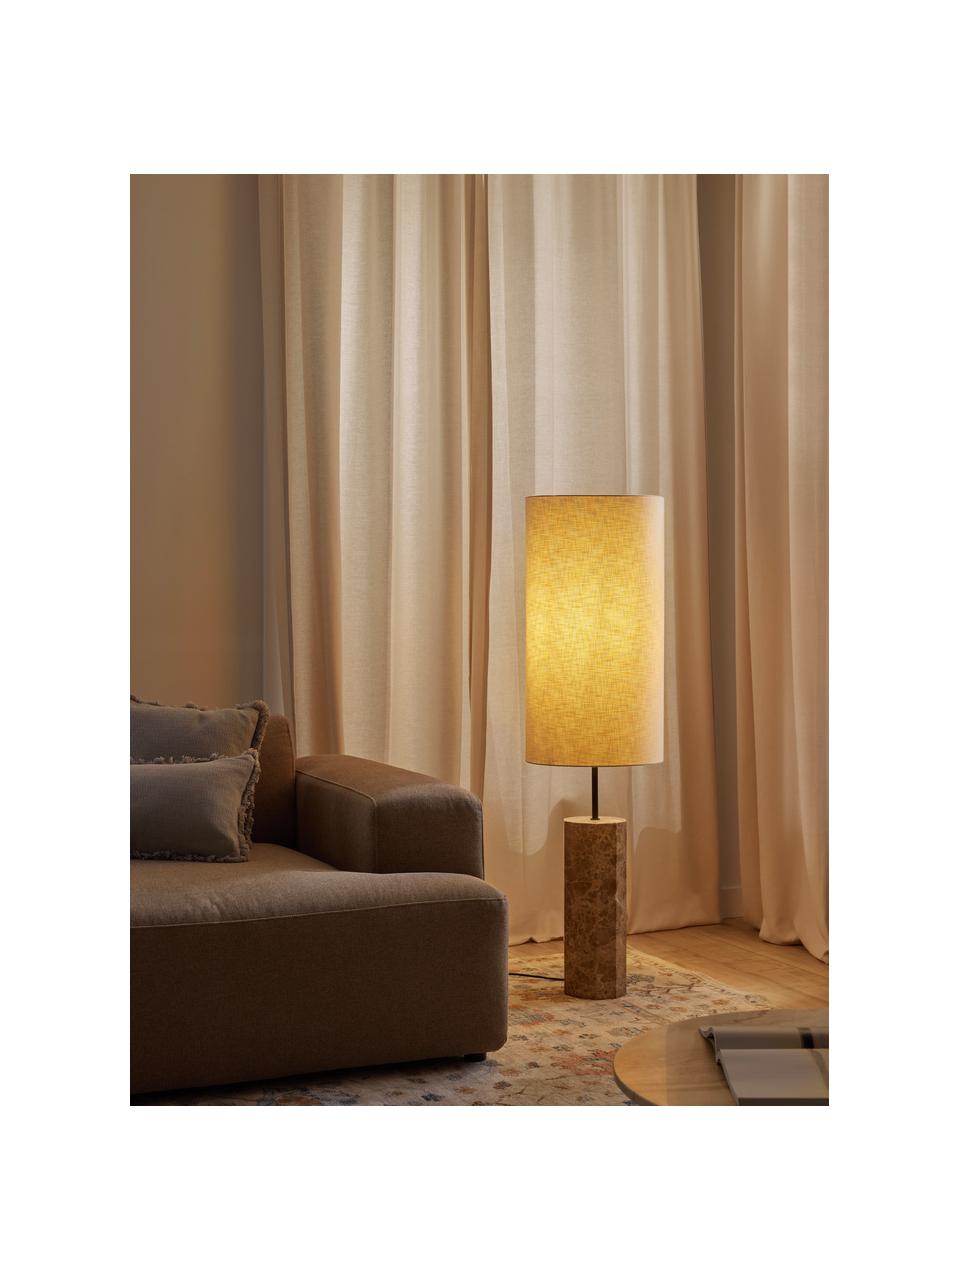 Vloerlamp Elanor met marmeren voet, Lampenkap: linnen, Lichtbeige, bruin, gemarmerd, H 128 cm